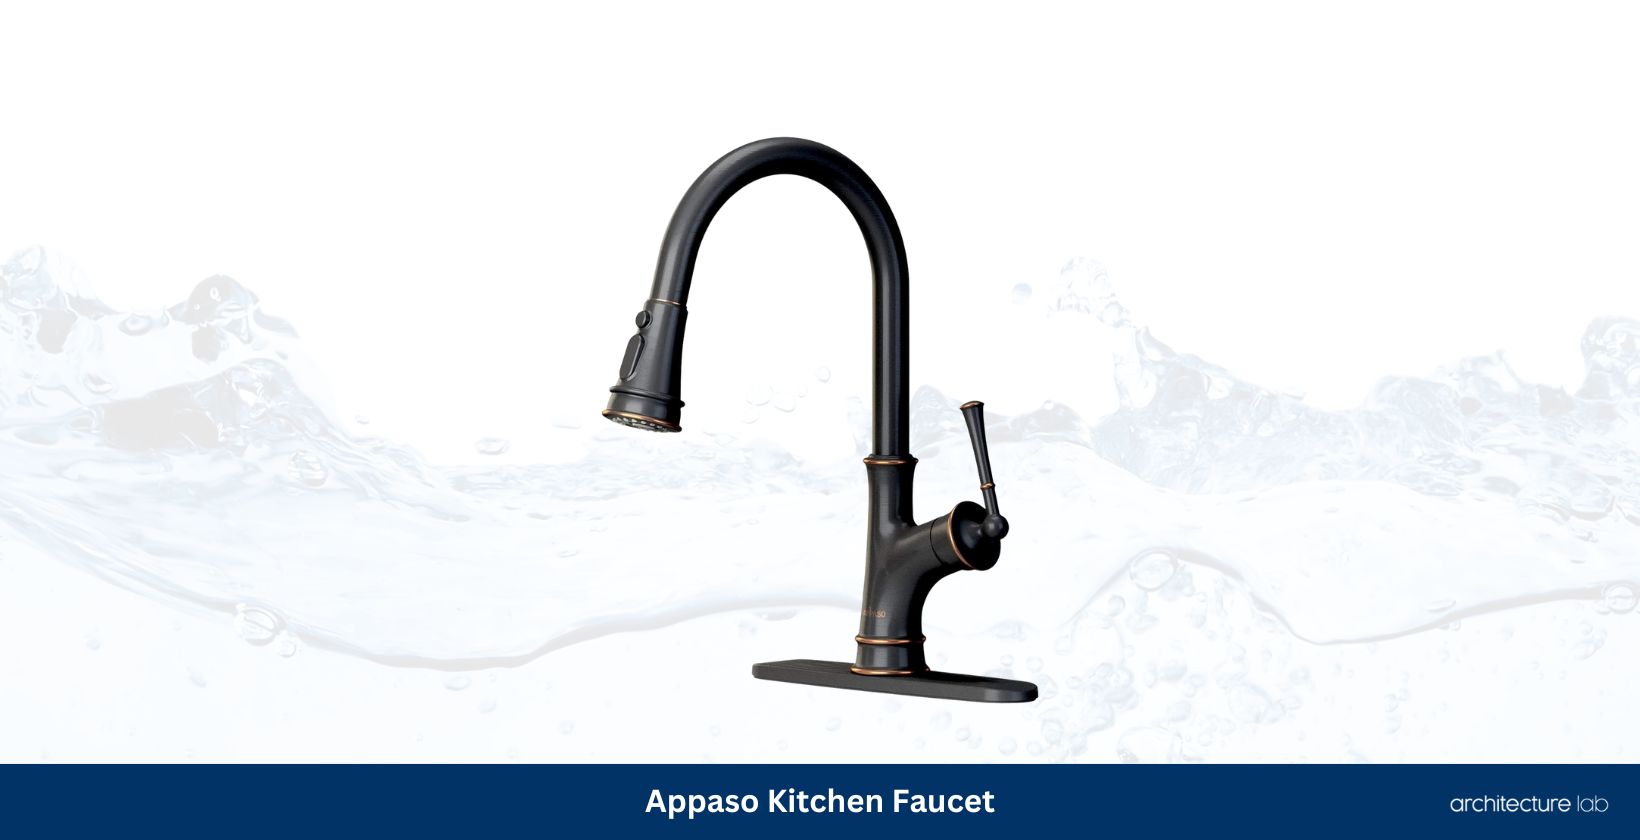 Appaso kitchen faucet